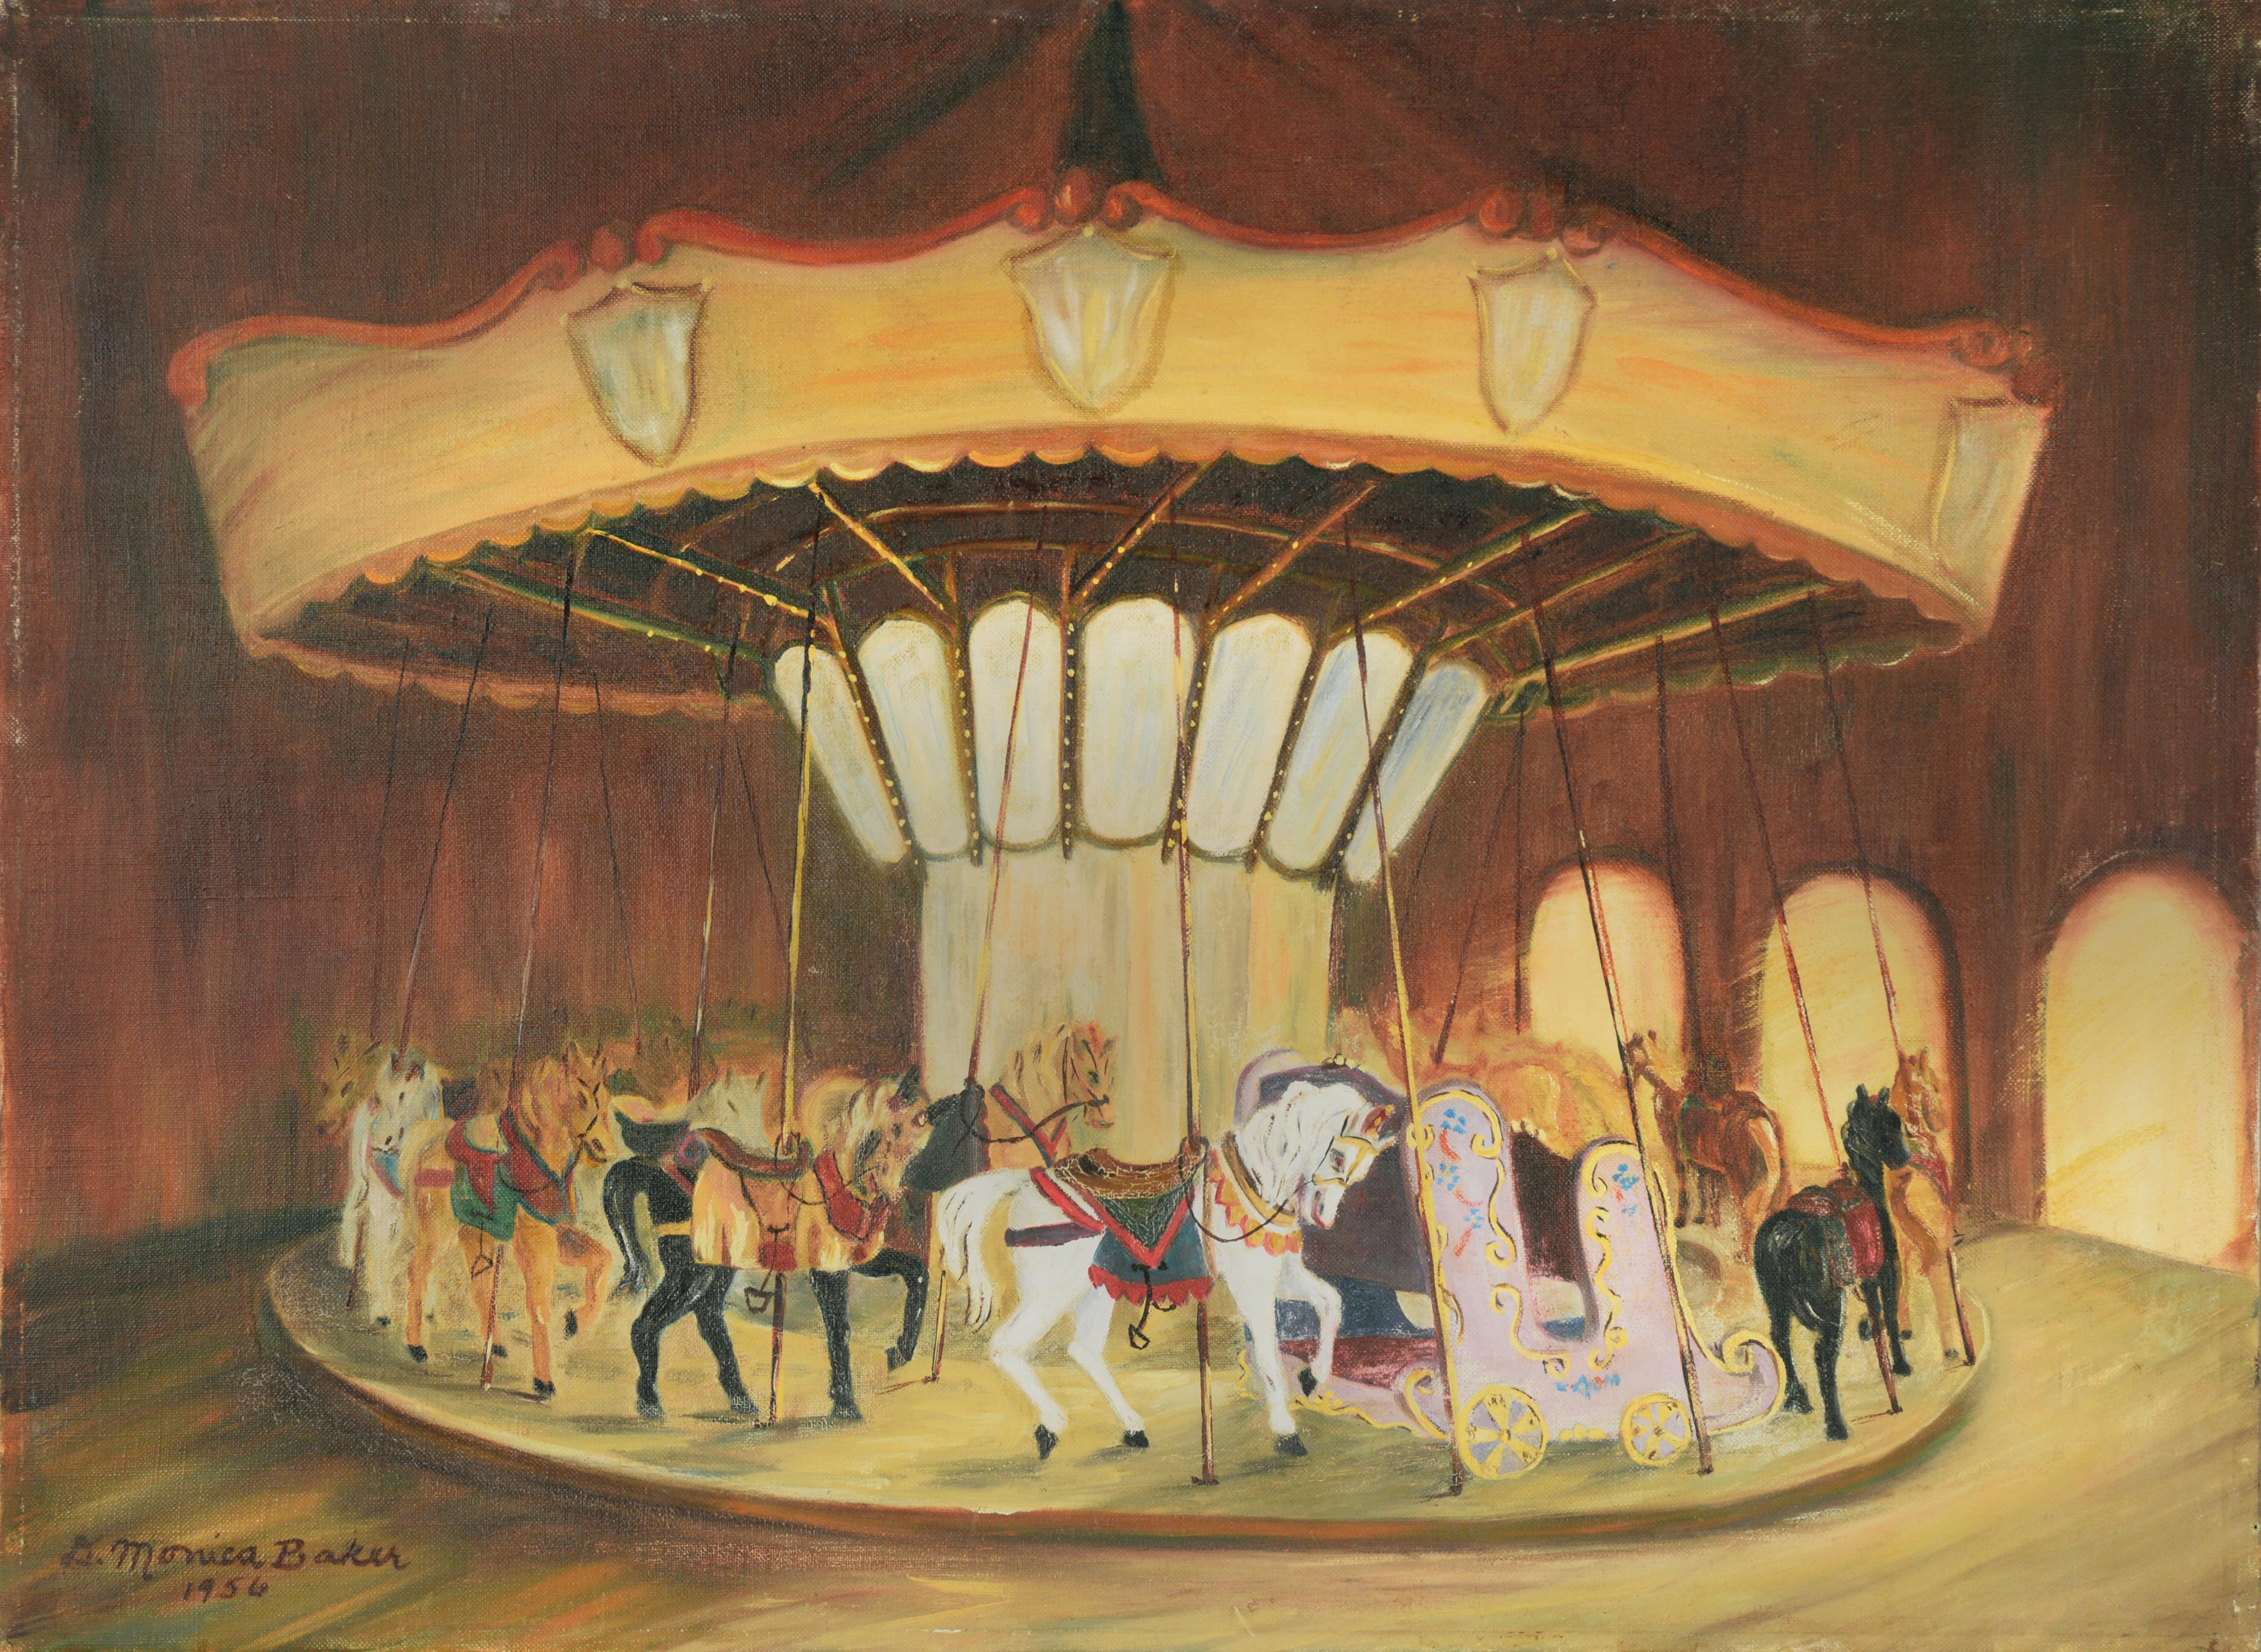 Monica Baker Figurative Painting - White Horse Carousel, 1956 - Original Oil Painting On Linen